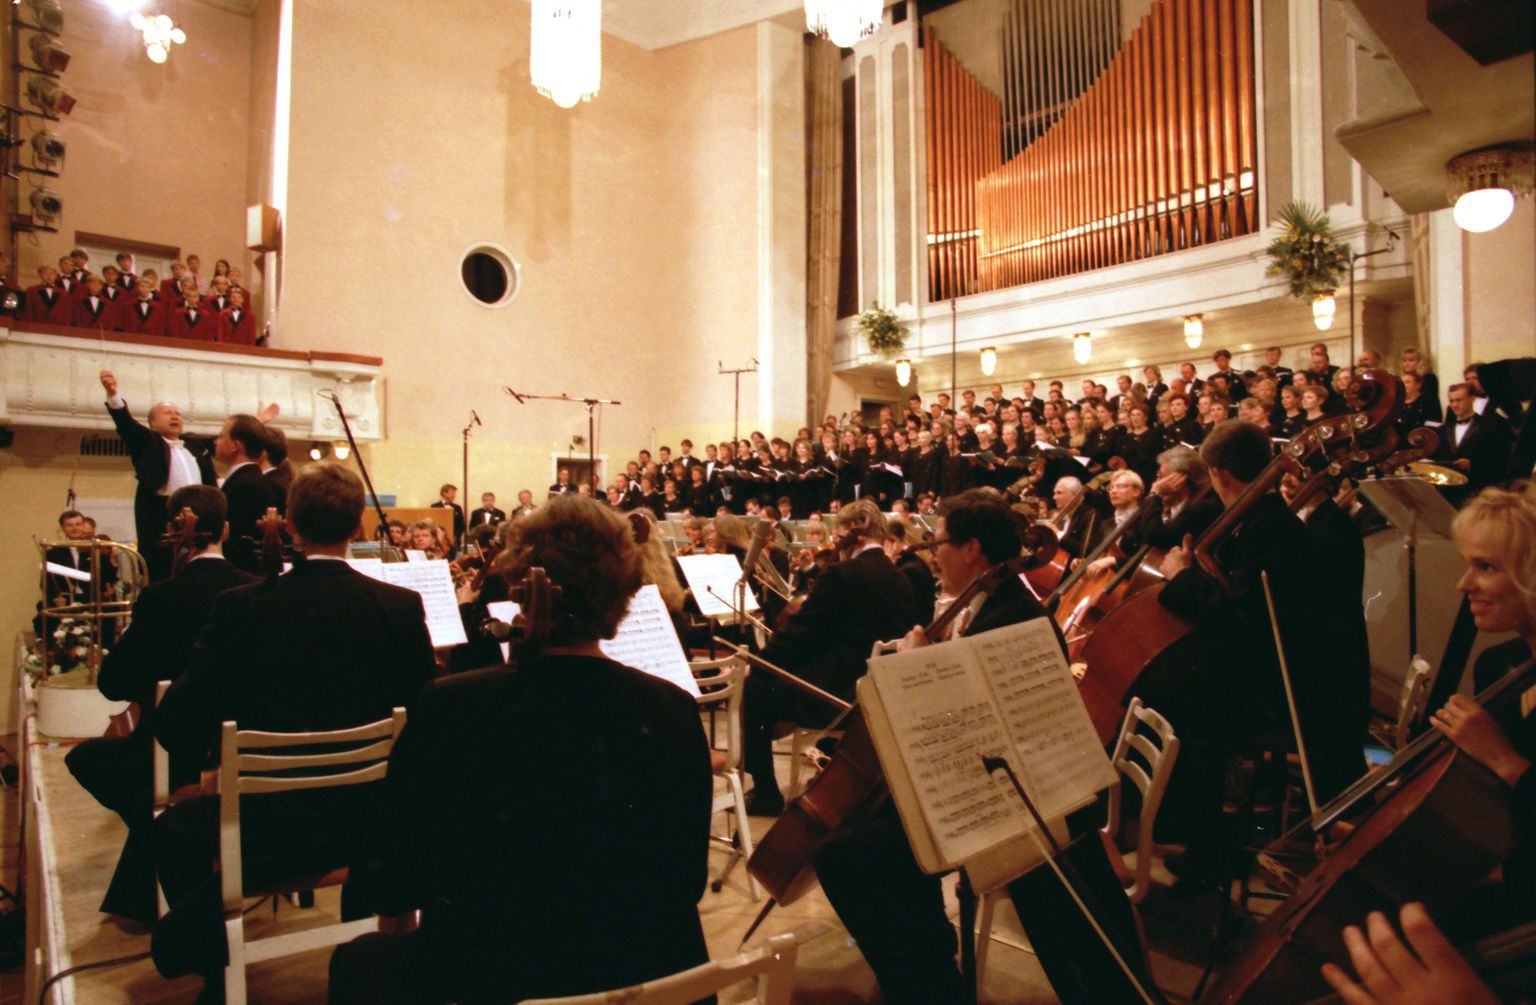 Rudolf Tobiase oratooriumi „Joonase lähetamine“ ettekanne Estonia Kontserdisaalis 1995.a